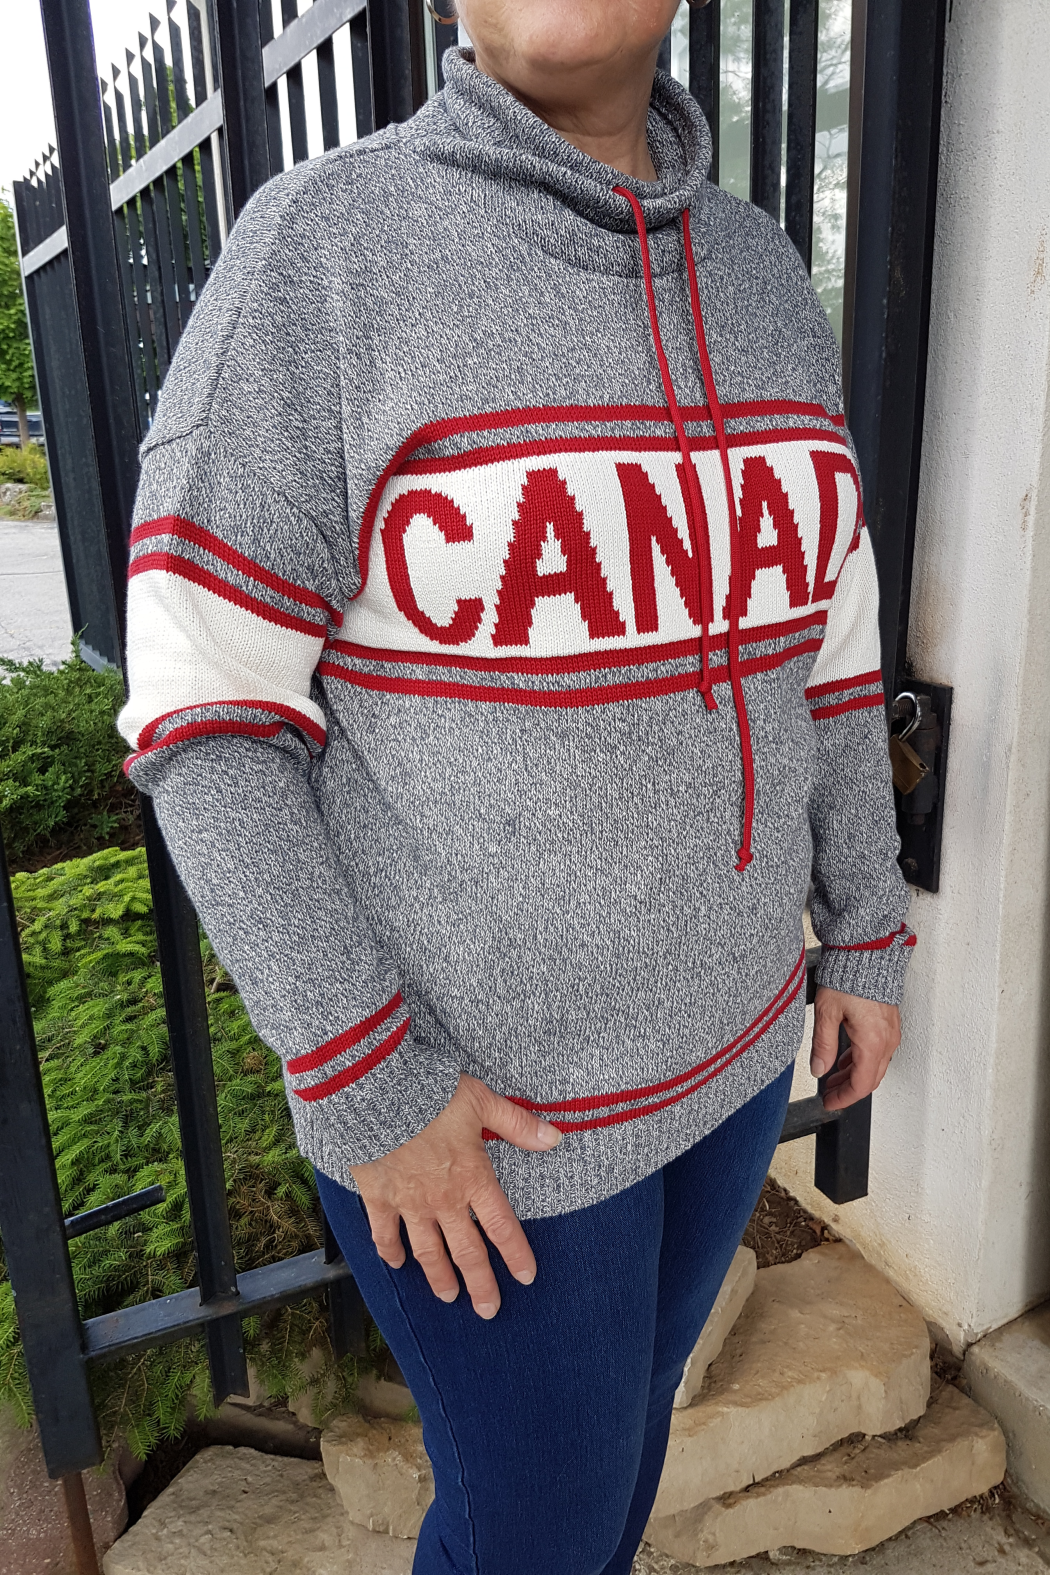 Canada Pullover Sweater